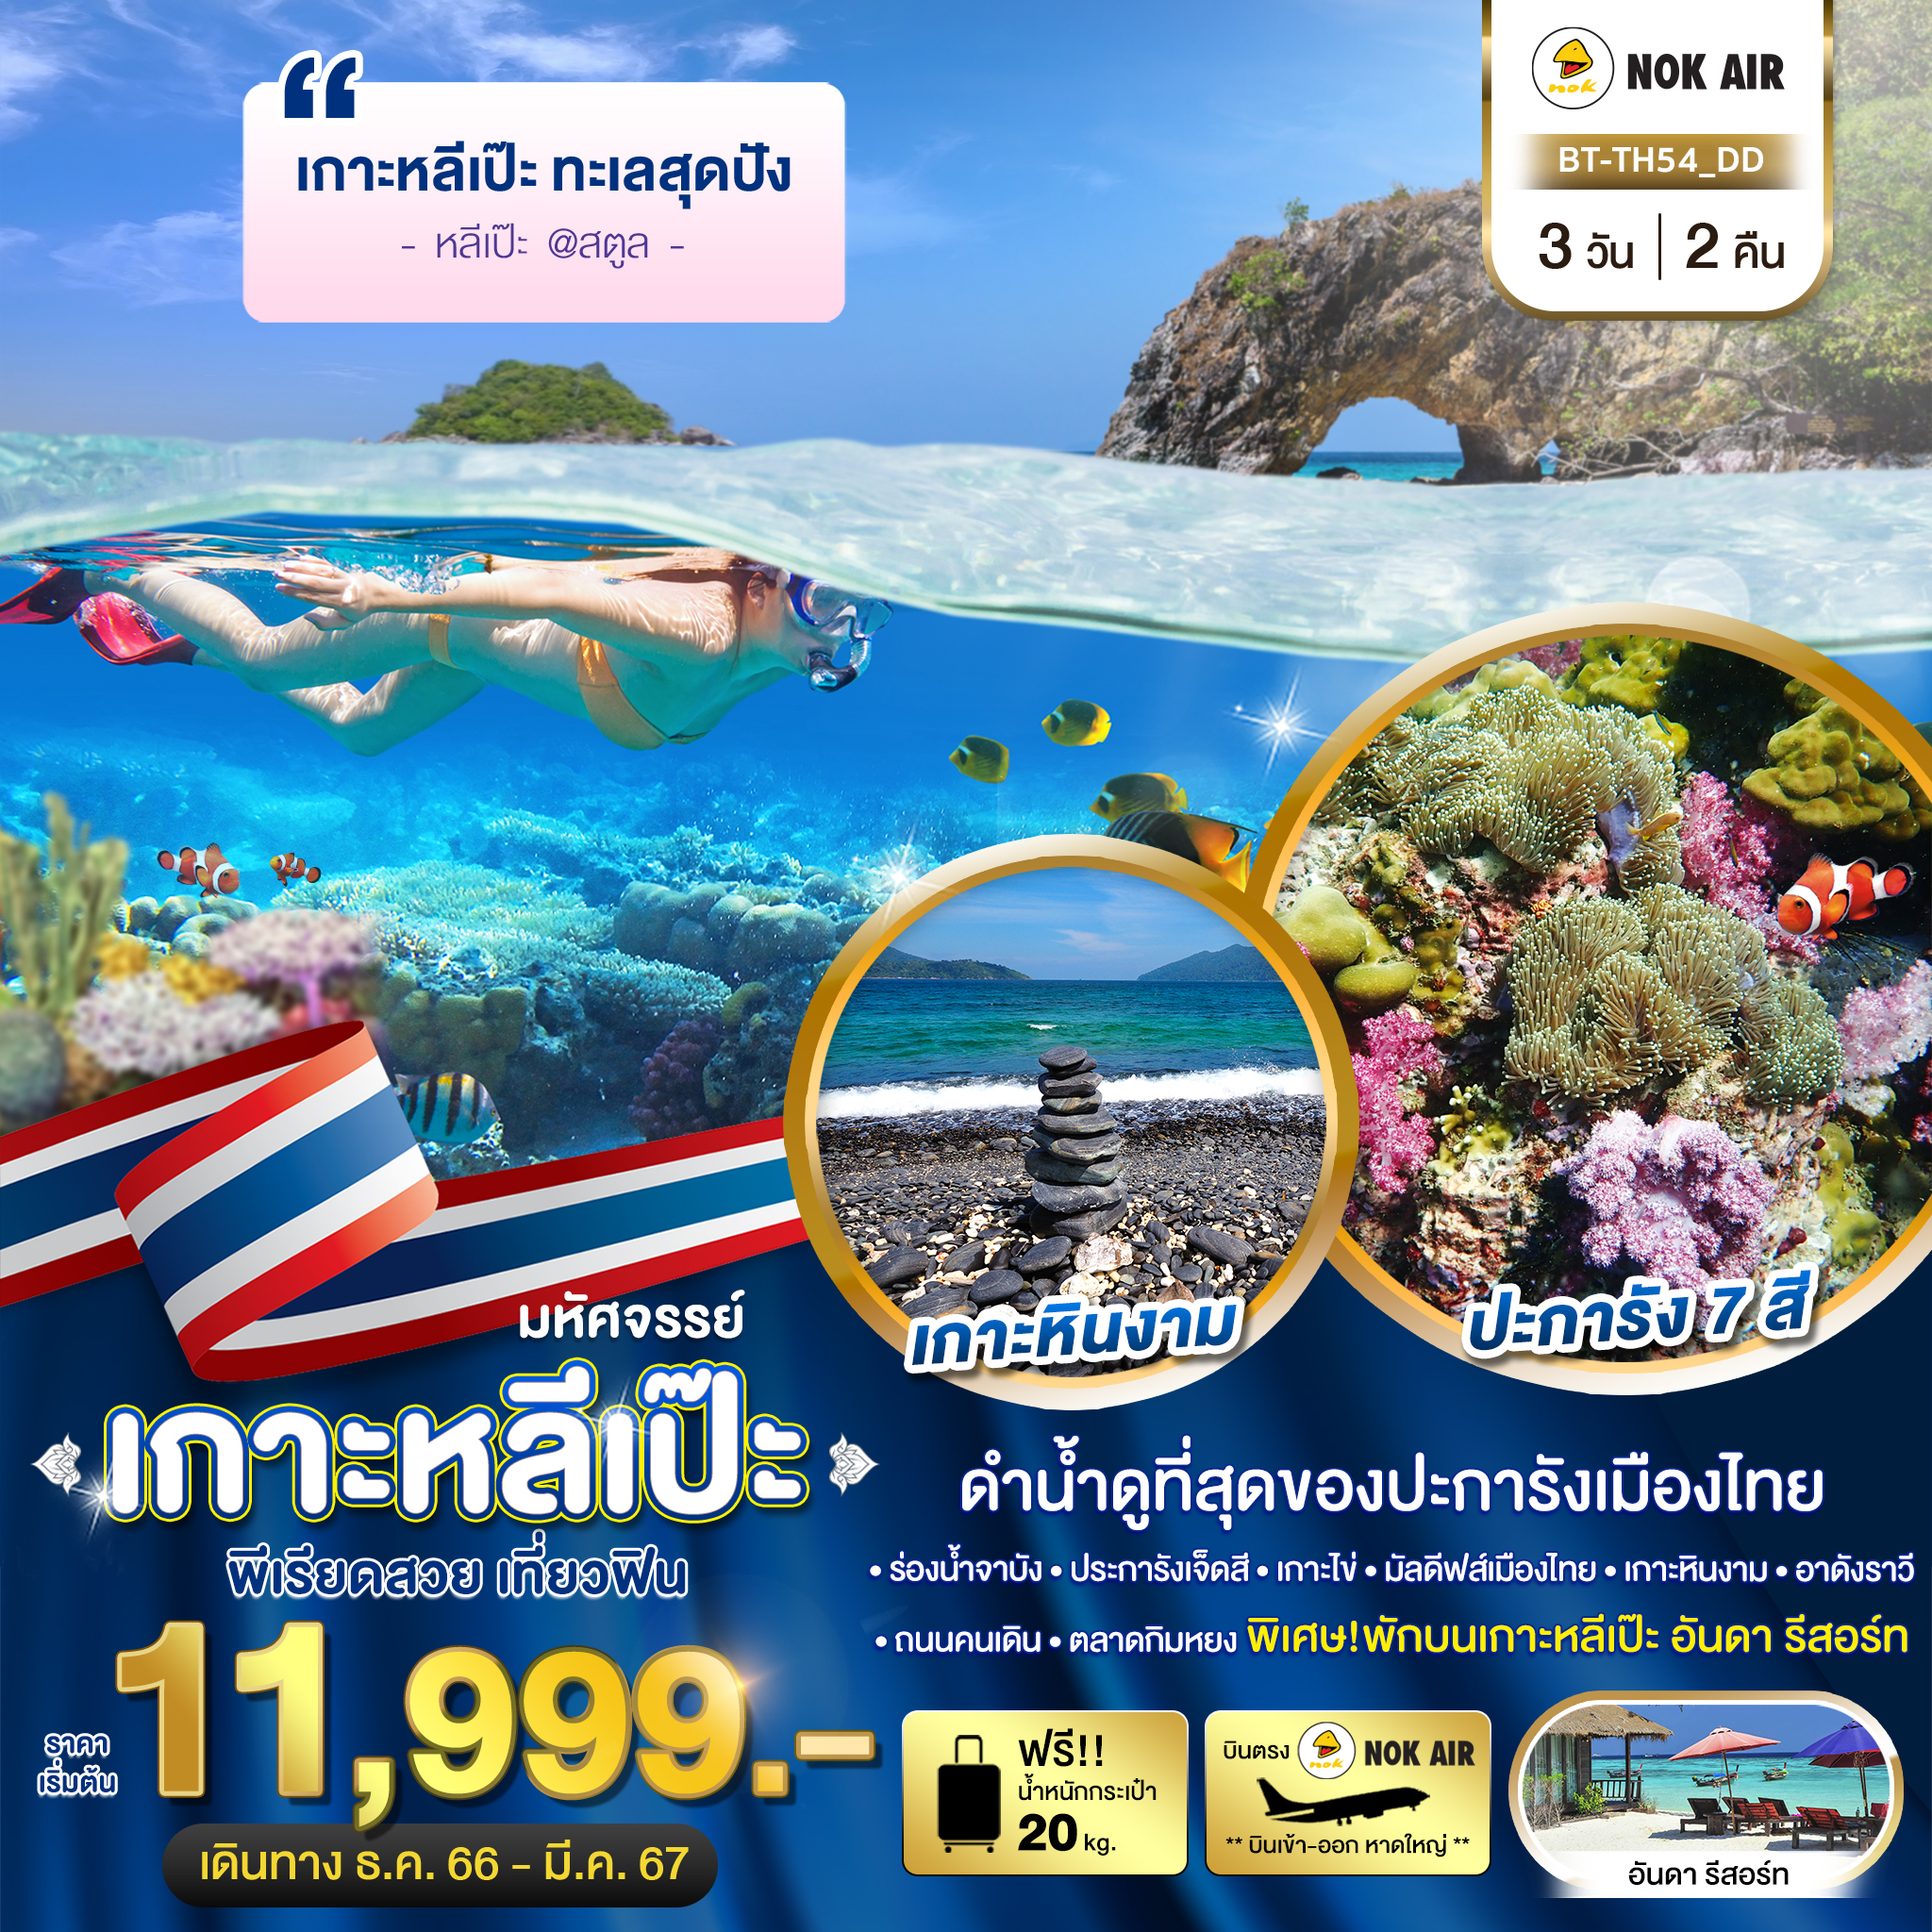 ทัวร์ไทย มหัศจรรย์..เกาะหลีเป๊ะ ทะเลสุดปัง ดำน้ำดูที่สุดของประการังเมืองไทย  3วัน 2คืน DD